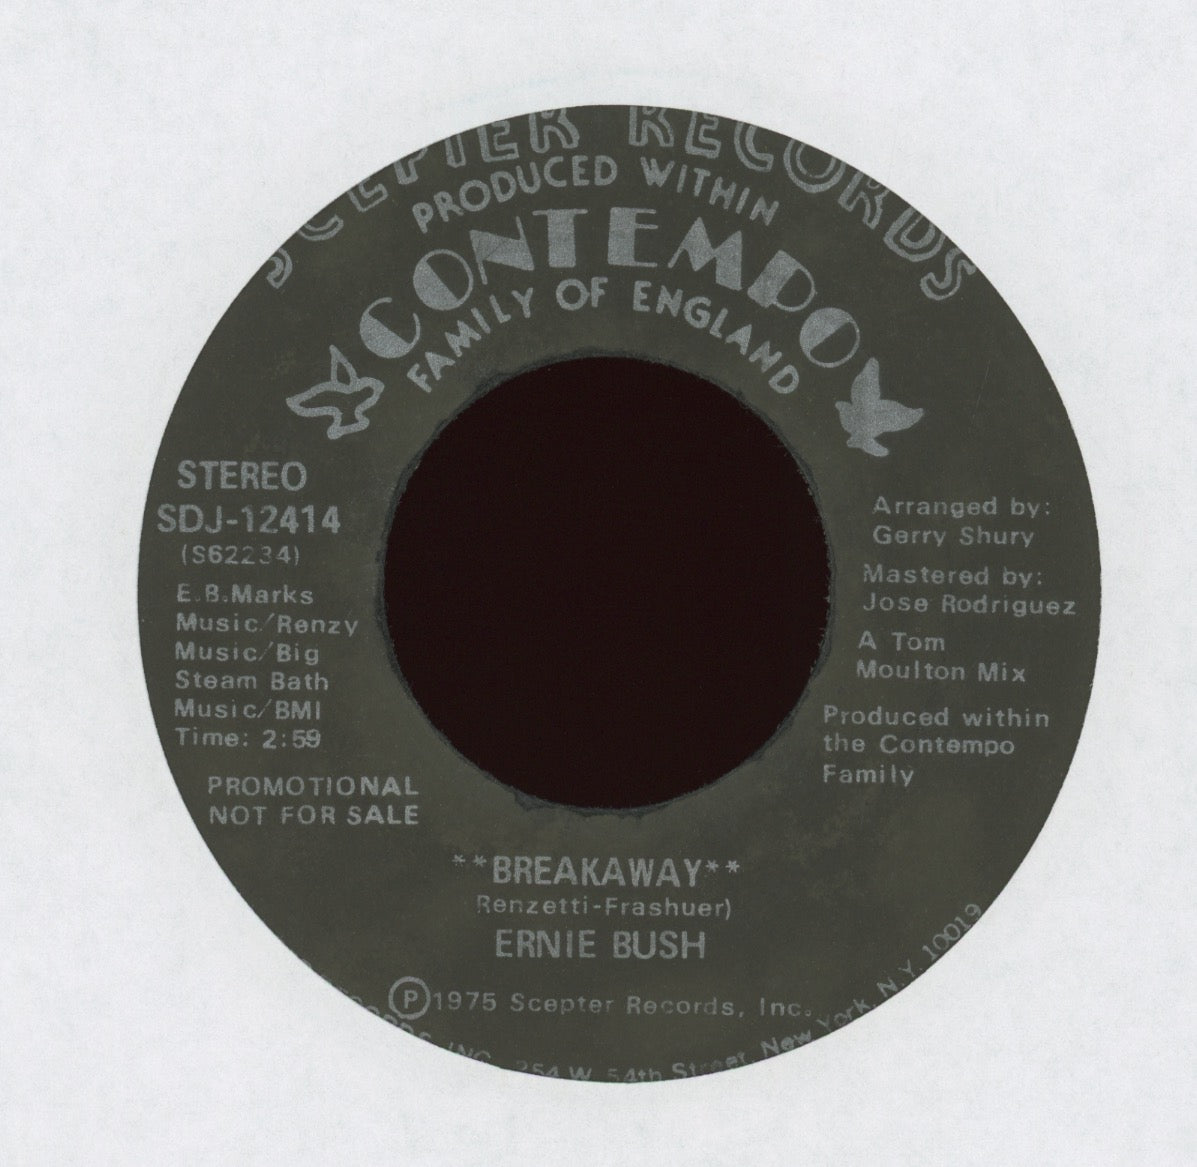 Ernie Bush - Breakaway on Contempo Promo 70's Soul 45 Hear